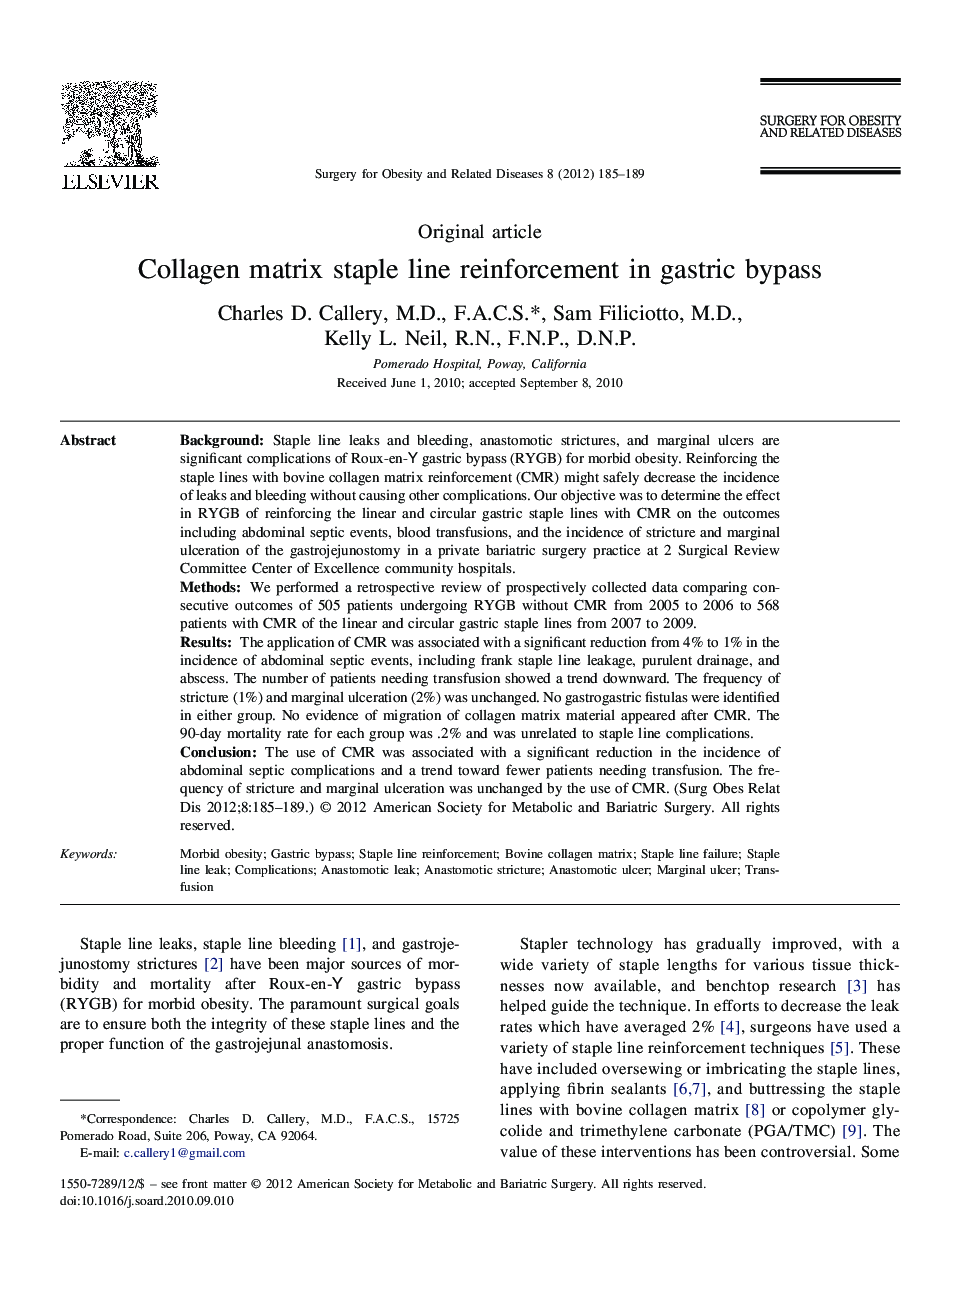 Collagen matrix staple line reinforcement in gastric bypass